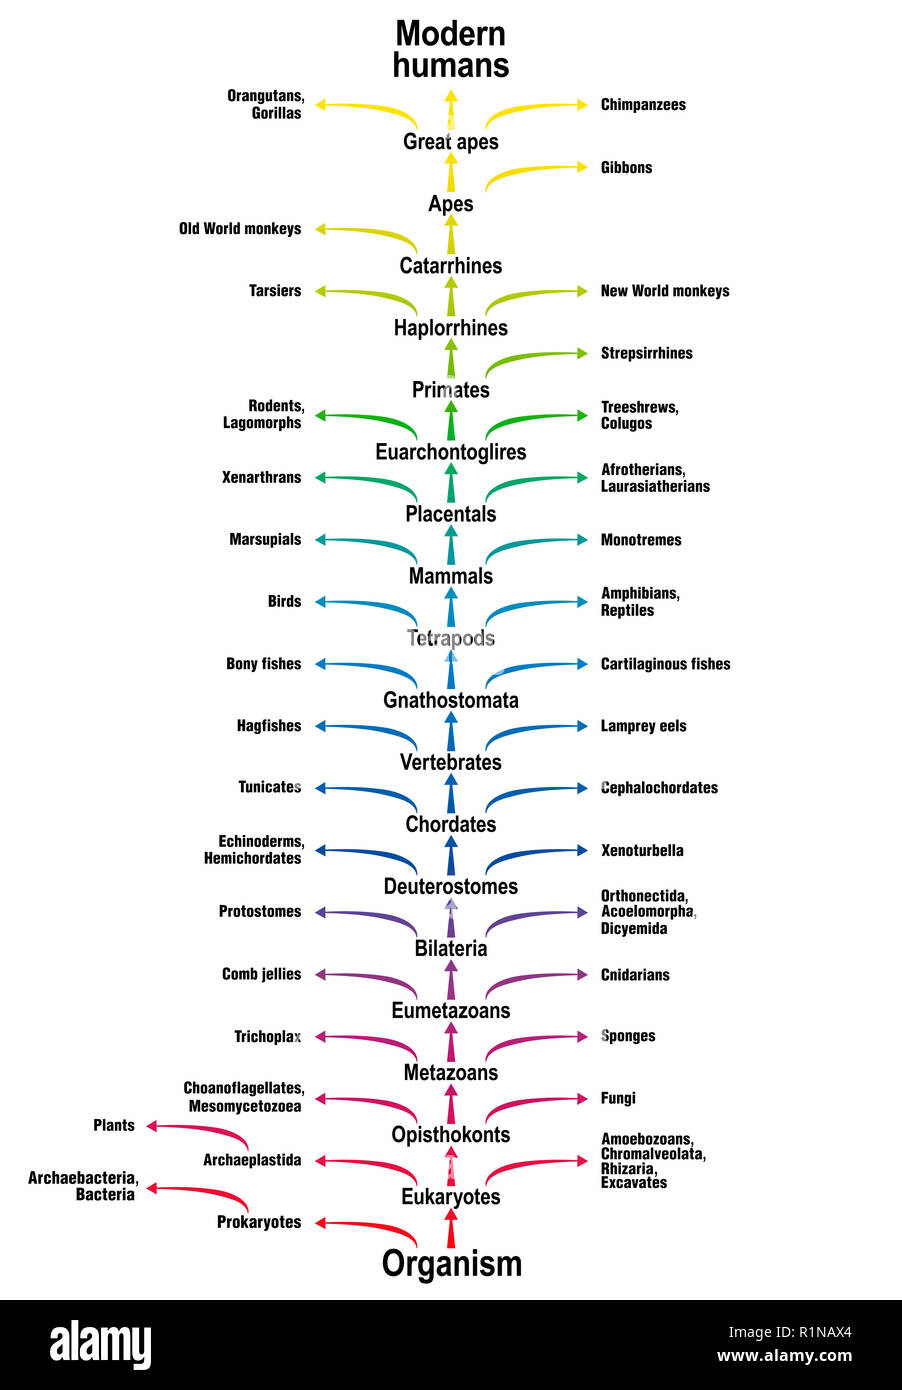 Baum des Lebens aller Lebewesen. Stammbaum der biologischen Wissenschaft, die sich mit der Trunk (Aufträge/Unteraufträge) und Branchen (Ergänzende Lebensformen). Classifica Stockfoto